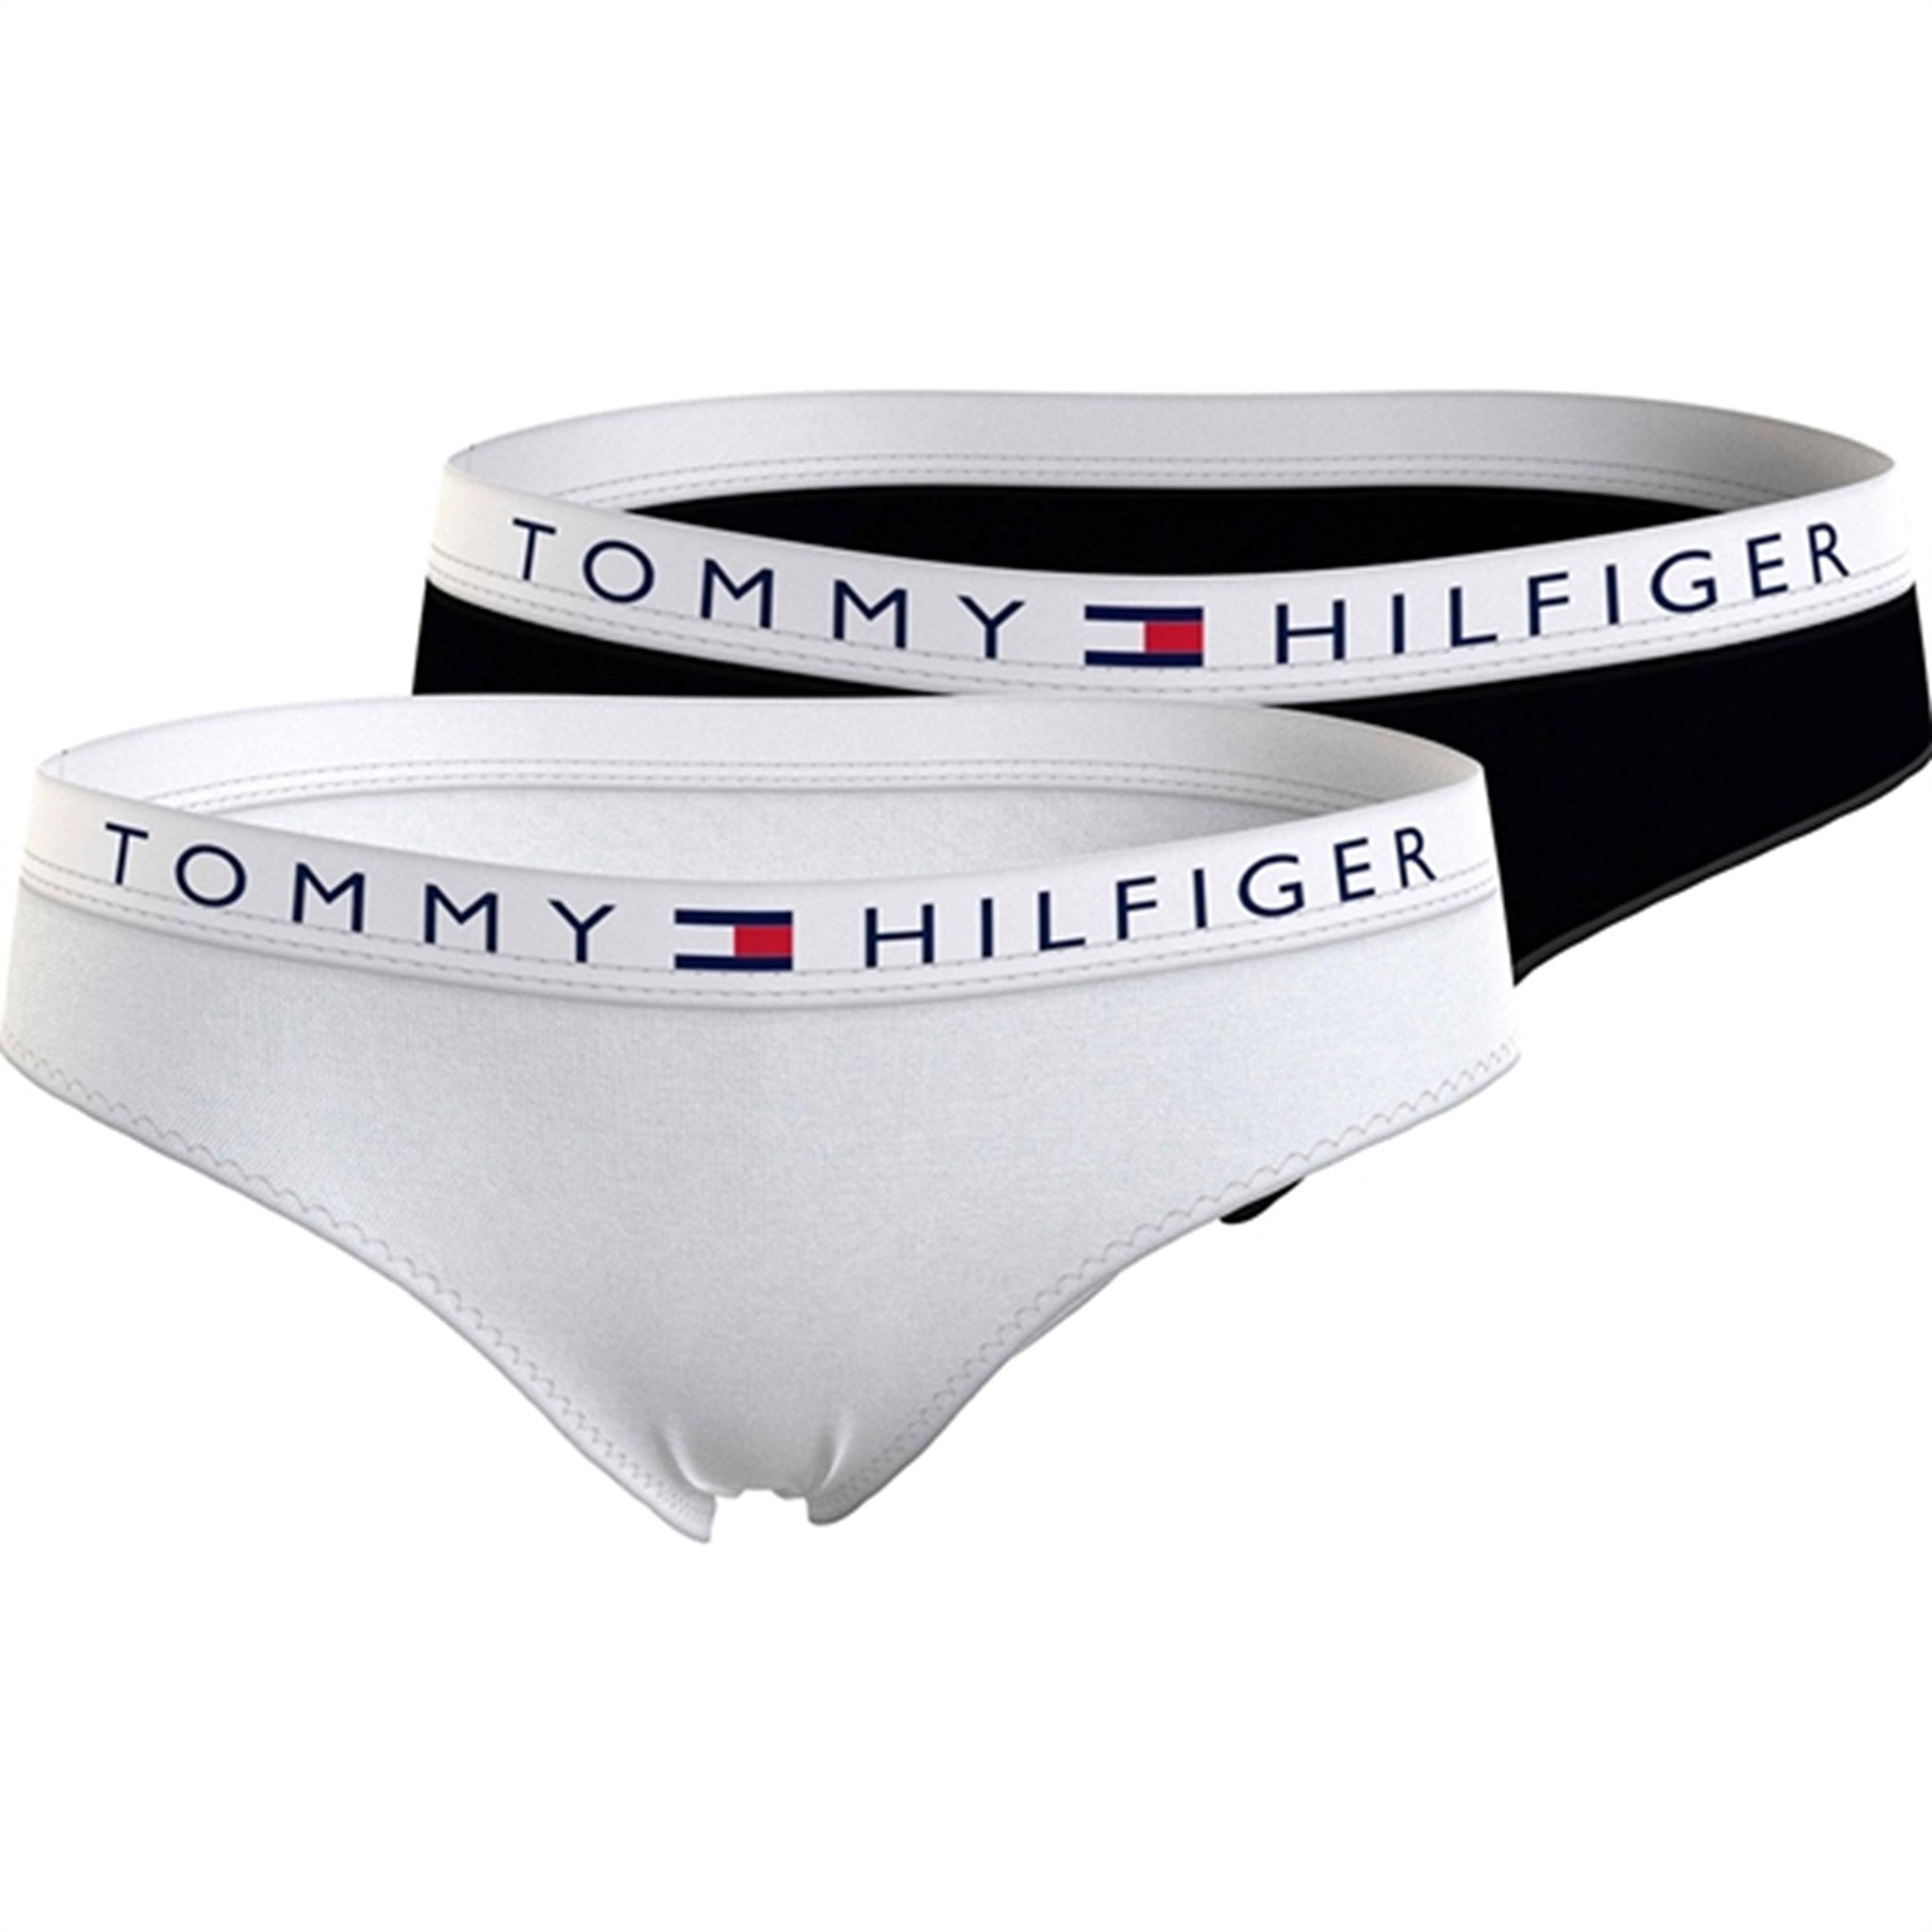 Tommy Hilfiger Briefs 2-Pack White / Black